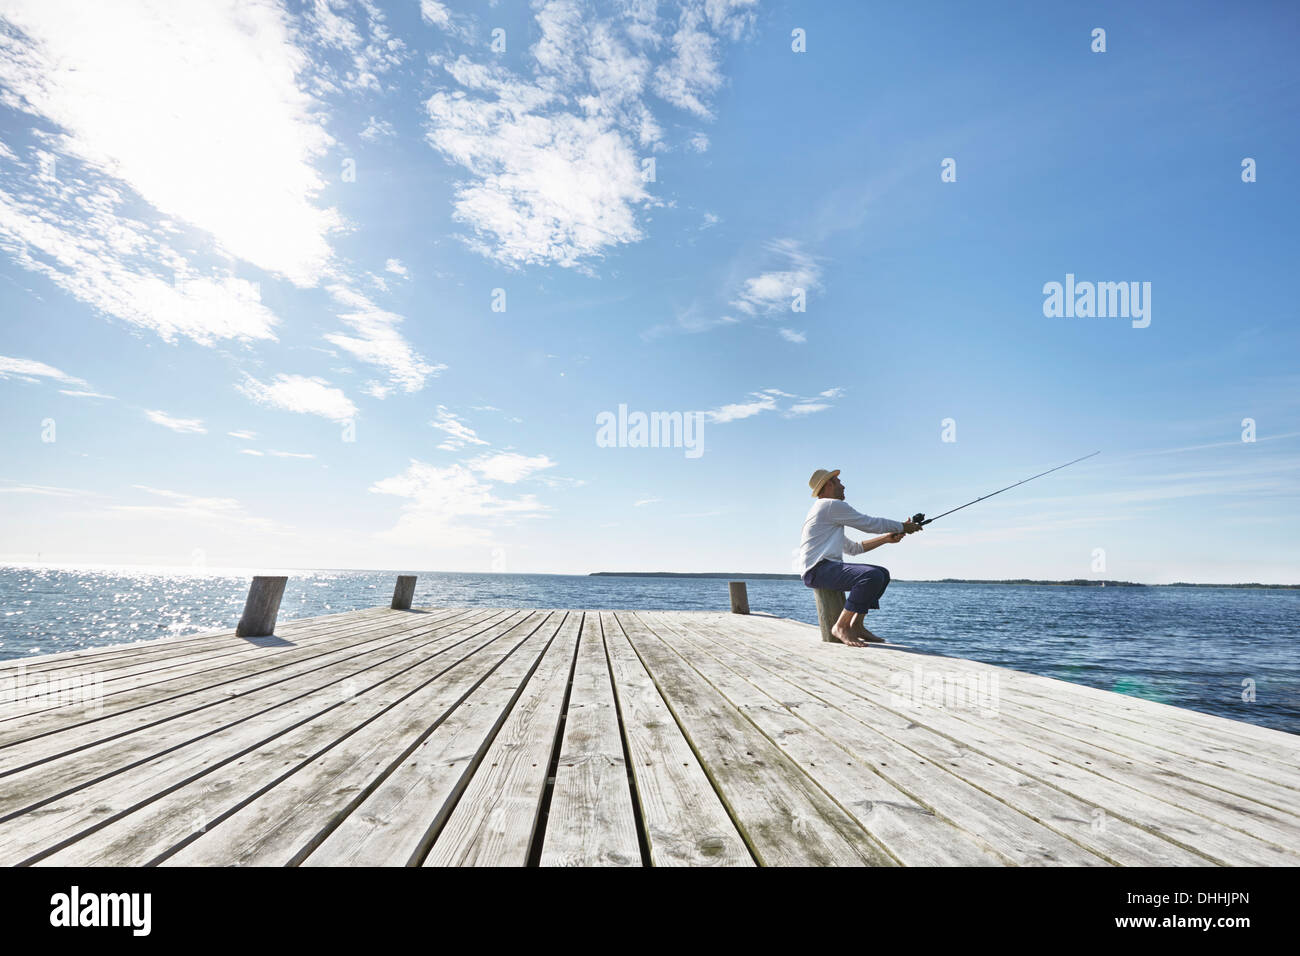 Mitte erwachsener Mann Angeln an Pier, Utvalnas, Schweden Stockfoto